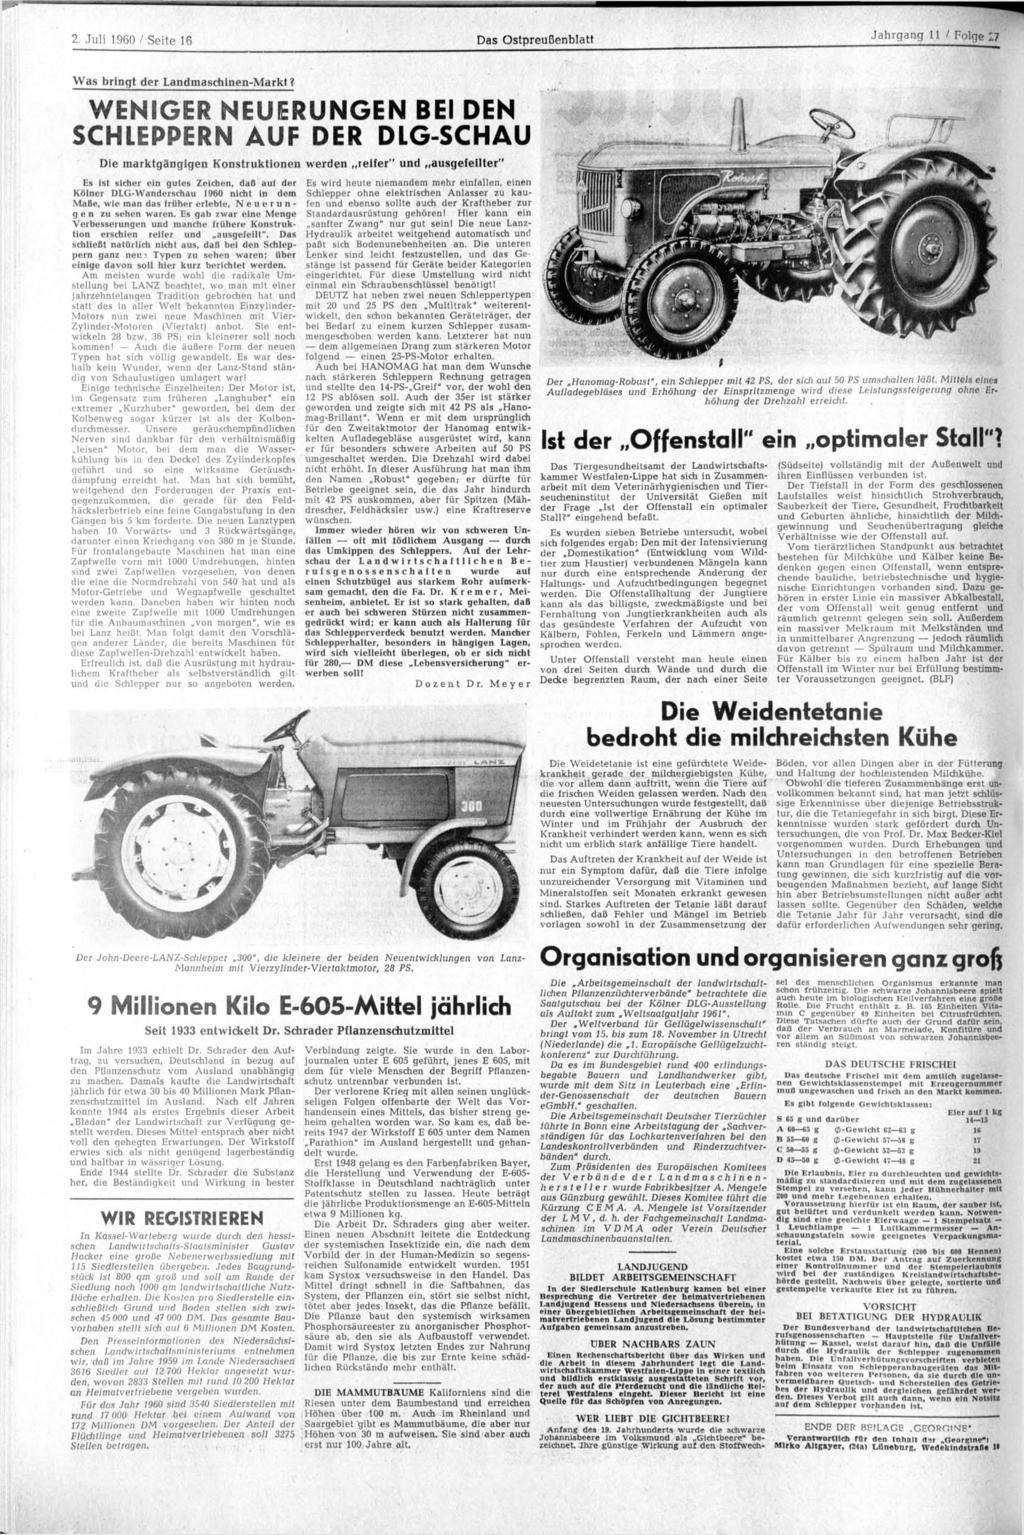 2. Juli 1960 / Seite 16 Das Ostpreußenblatt Jahrgang 11 / Folge 27 Was bringt der Landmaschinen-Markt?